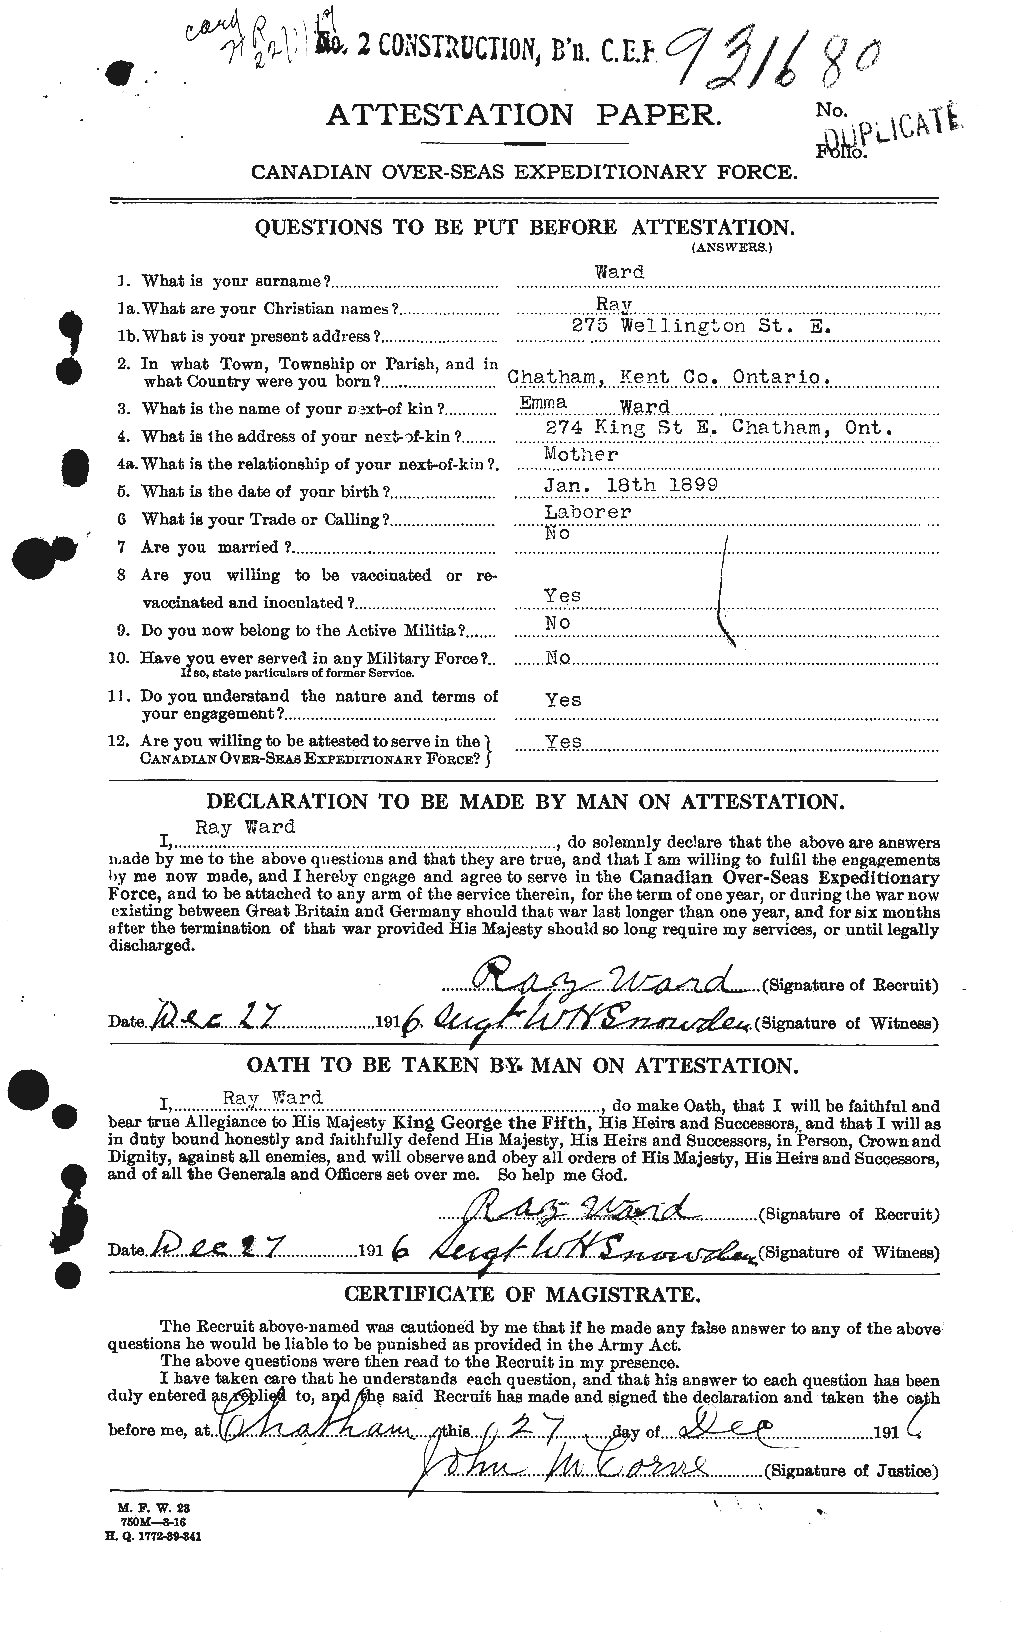 Dossiers du Personnel de la Première Guerre mondiale - CEC 659637a